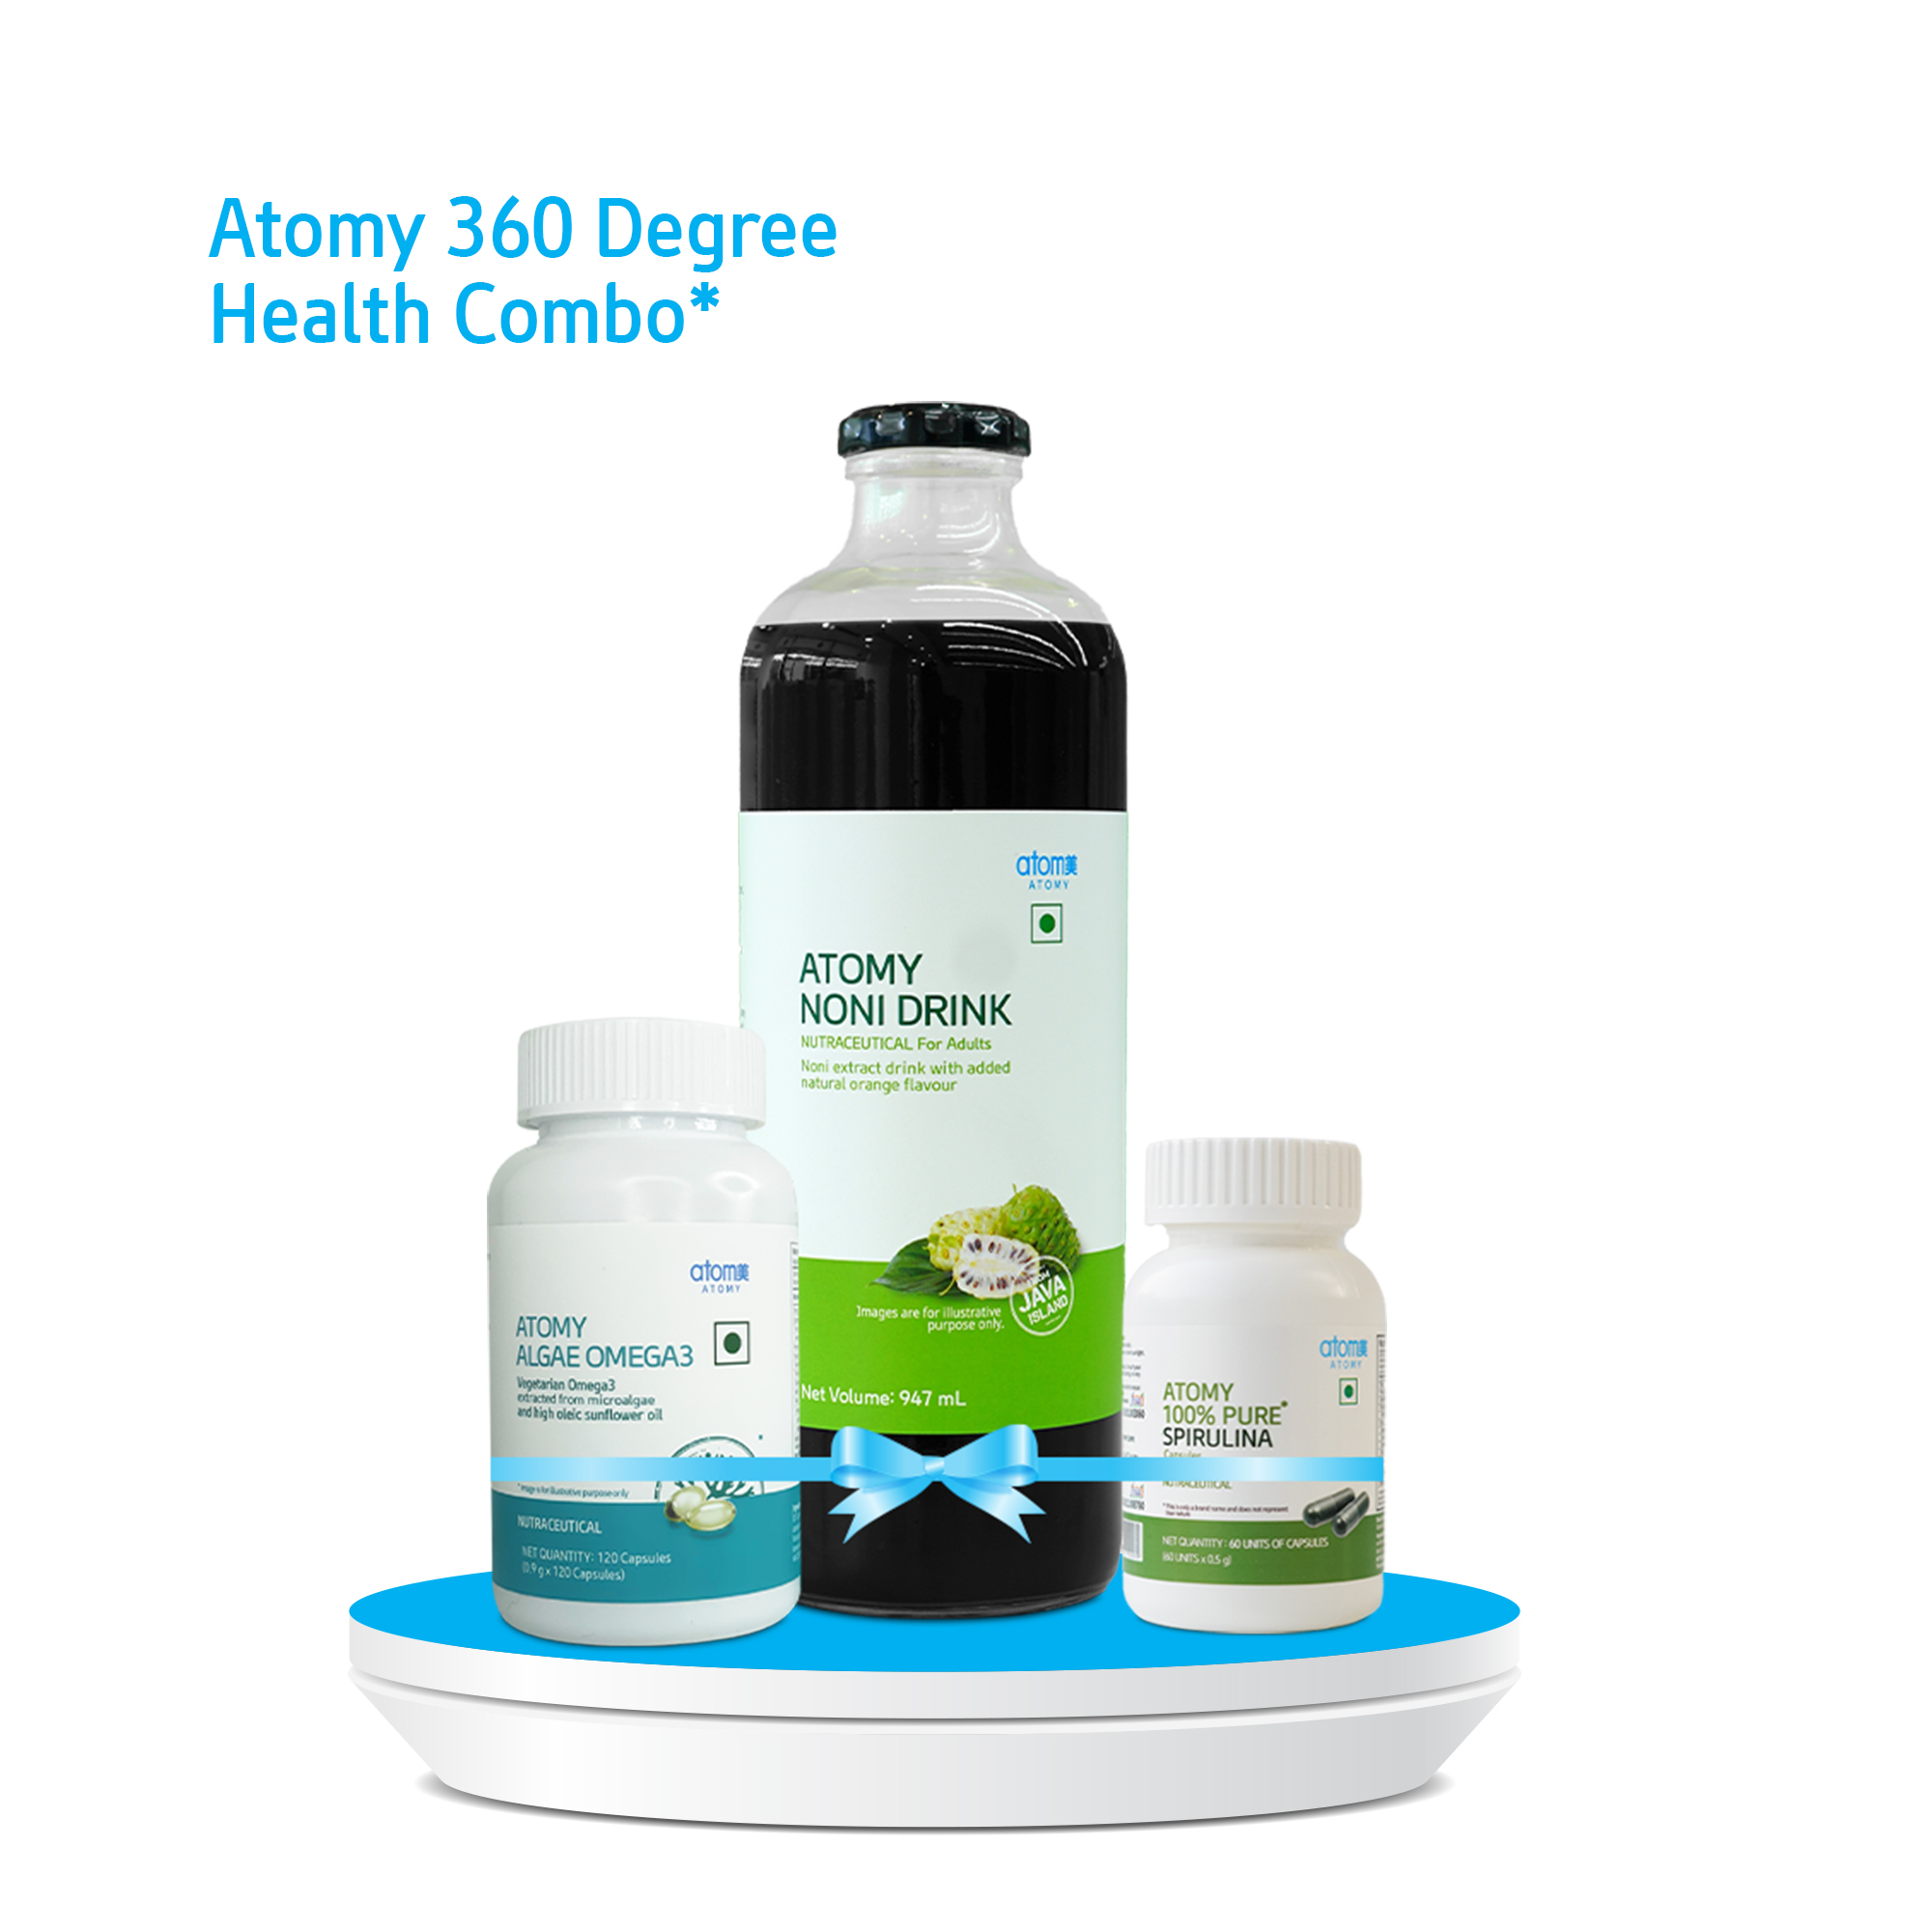 Atomy 360 Degree Health Combo* | Atomy India